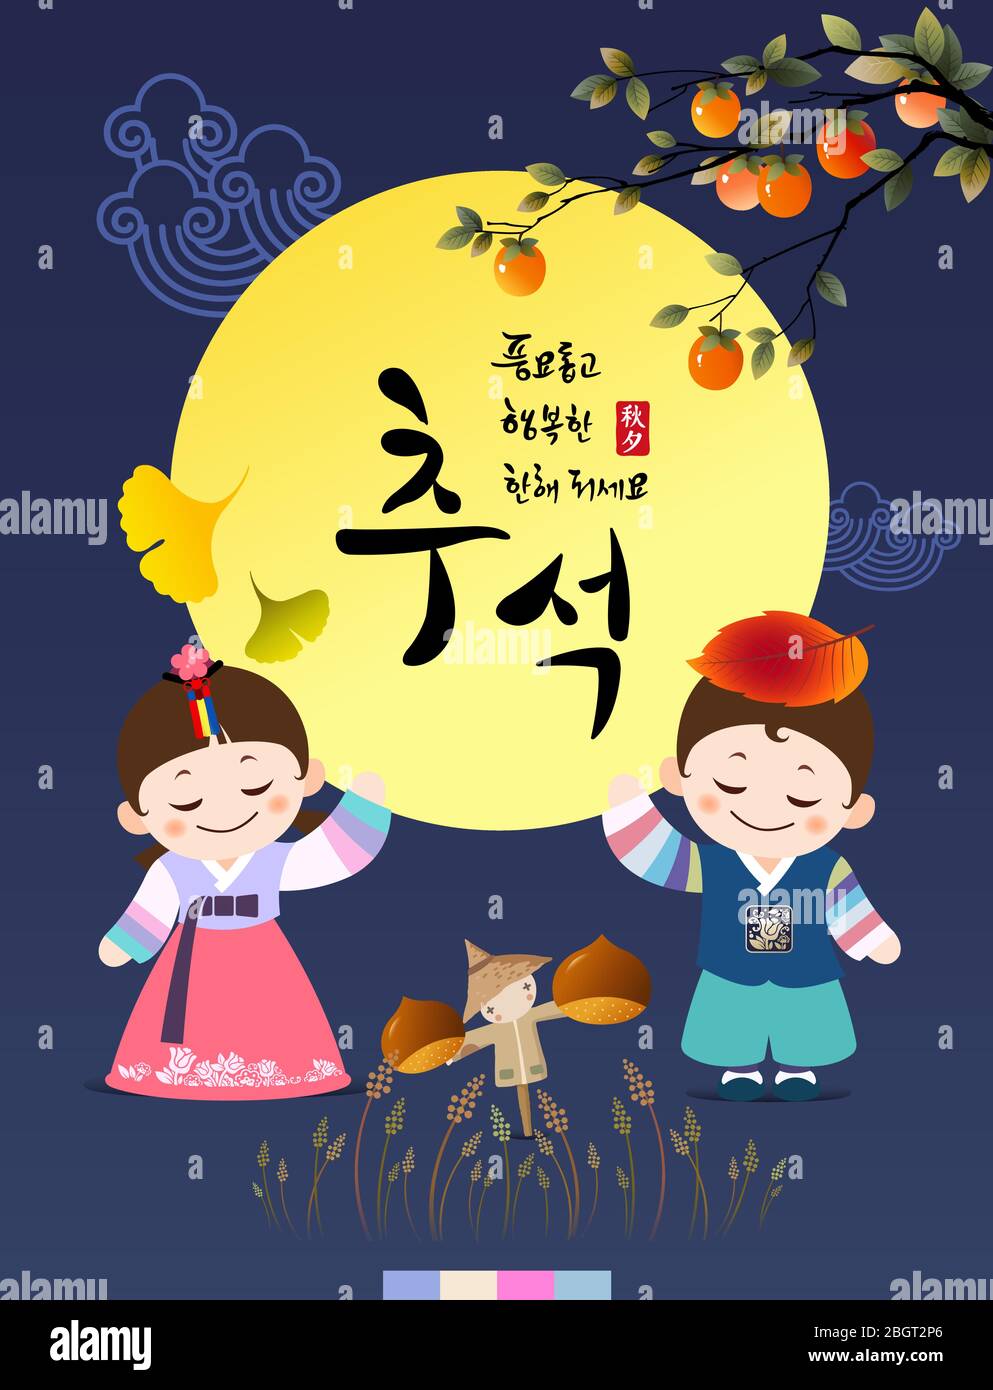 Reiche Ernte und glücklich Chuseok, Hangawi, Koreanisch Übersetzung. Koreanische traditionelle Kinderfigur und Vollmond. Stock Vektor